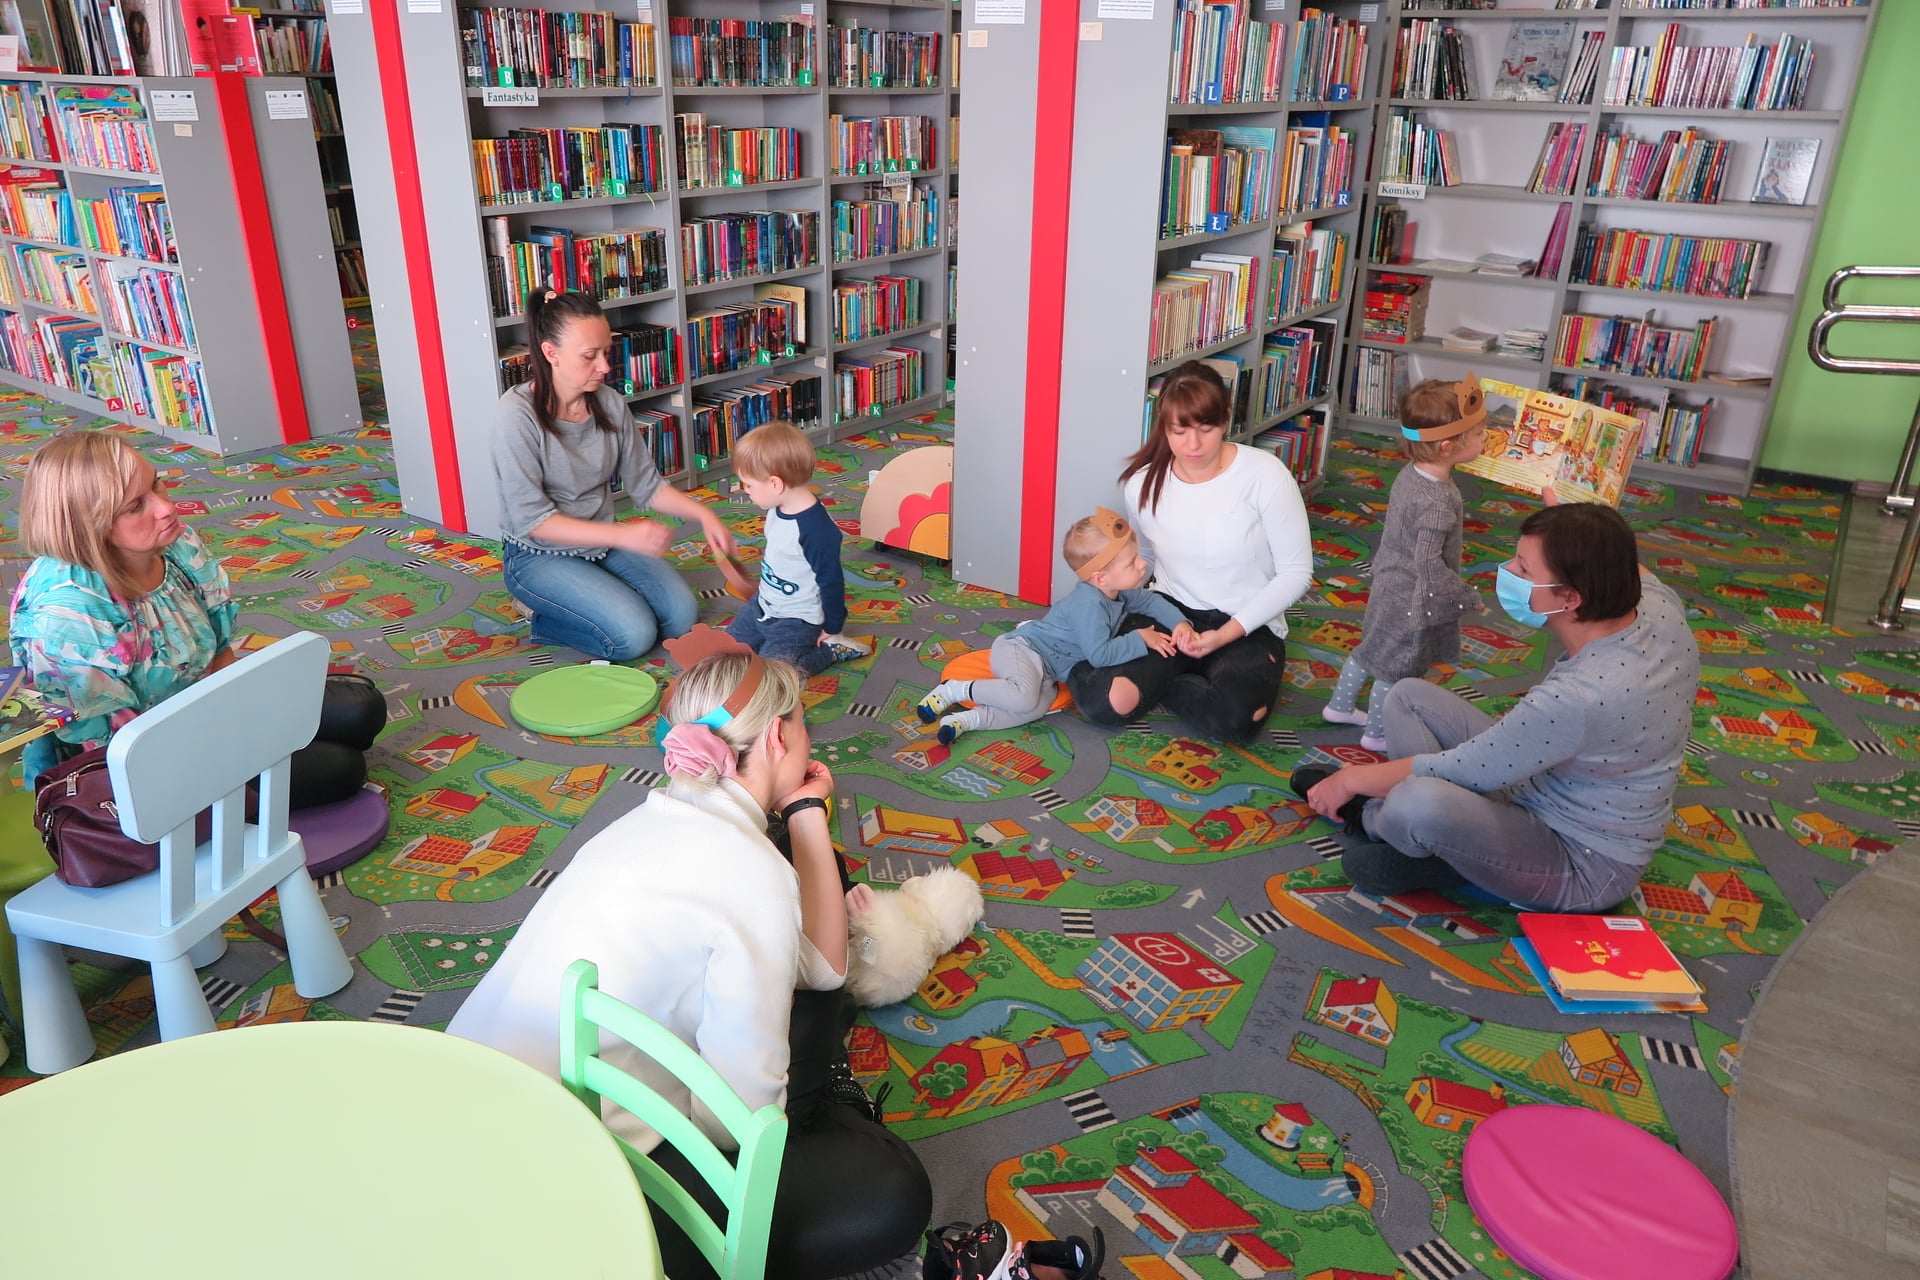 pięć kobiet siedzi na podłodze w oddziale dla dzieci, obok siedzi dwoje dzieci, jedno dziecko stoi i przygląda się obrazków w książce trzymanej przez bibliotekarkę, w tle widać regały z książkami